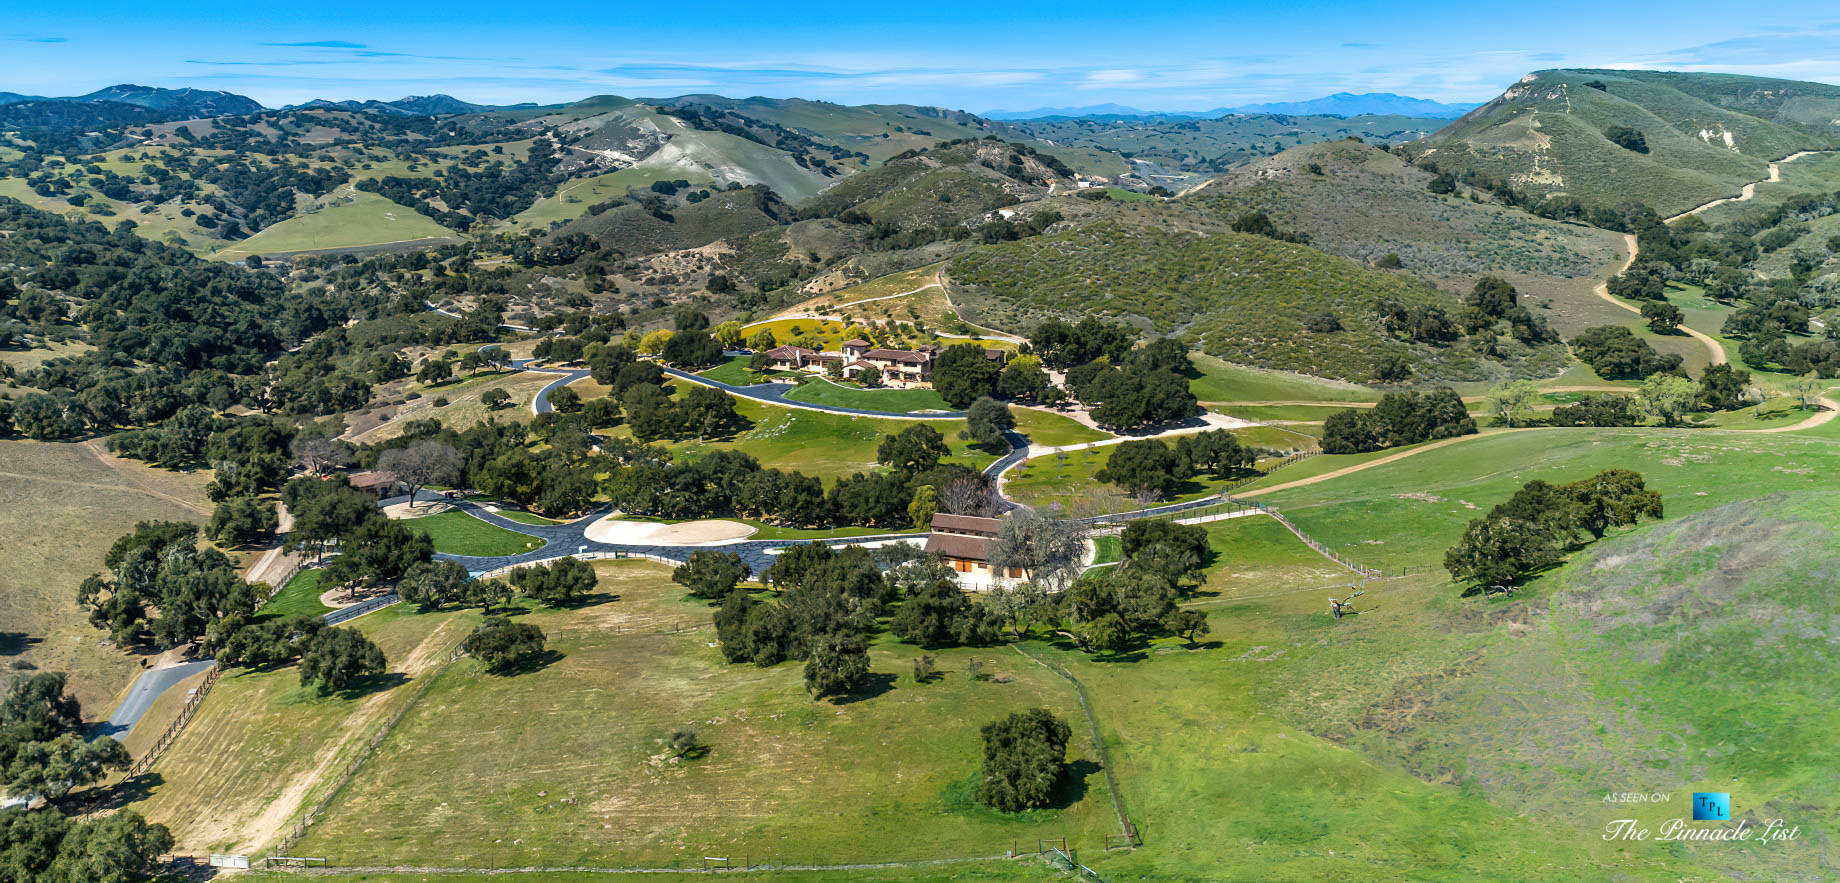 Spectacular 251 Acre Twin Oak Ranch - 2667 Via De Los Ranchos, Los Olivos, CA, USA - Italian Villa Residence Aerial Property View